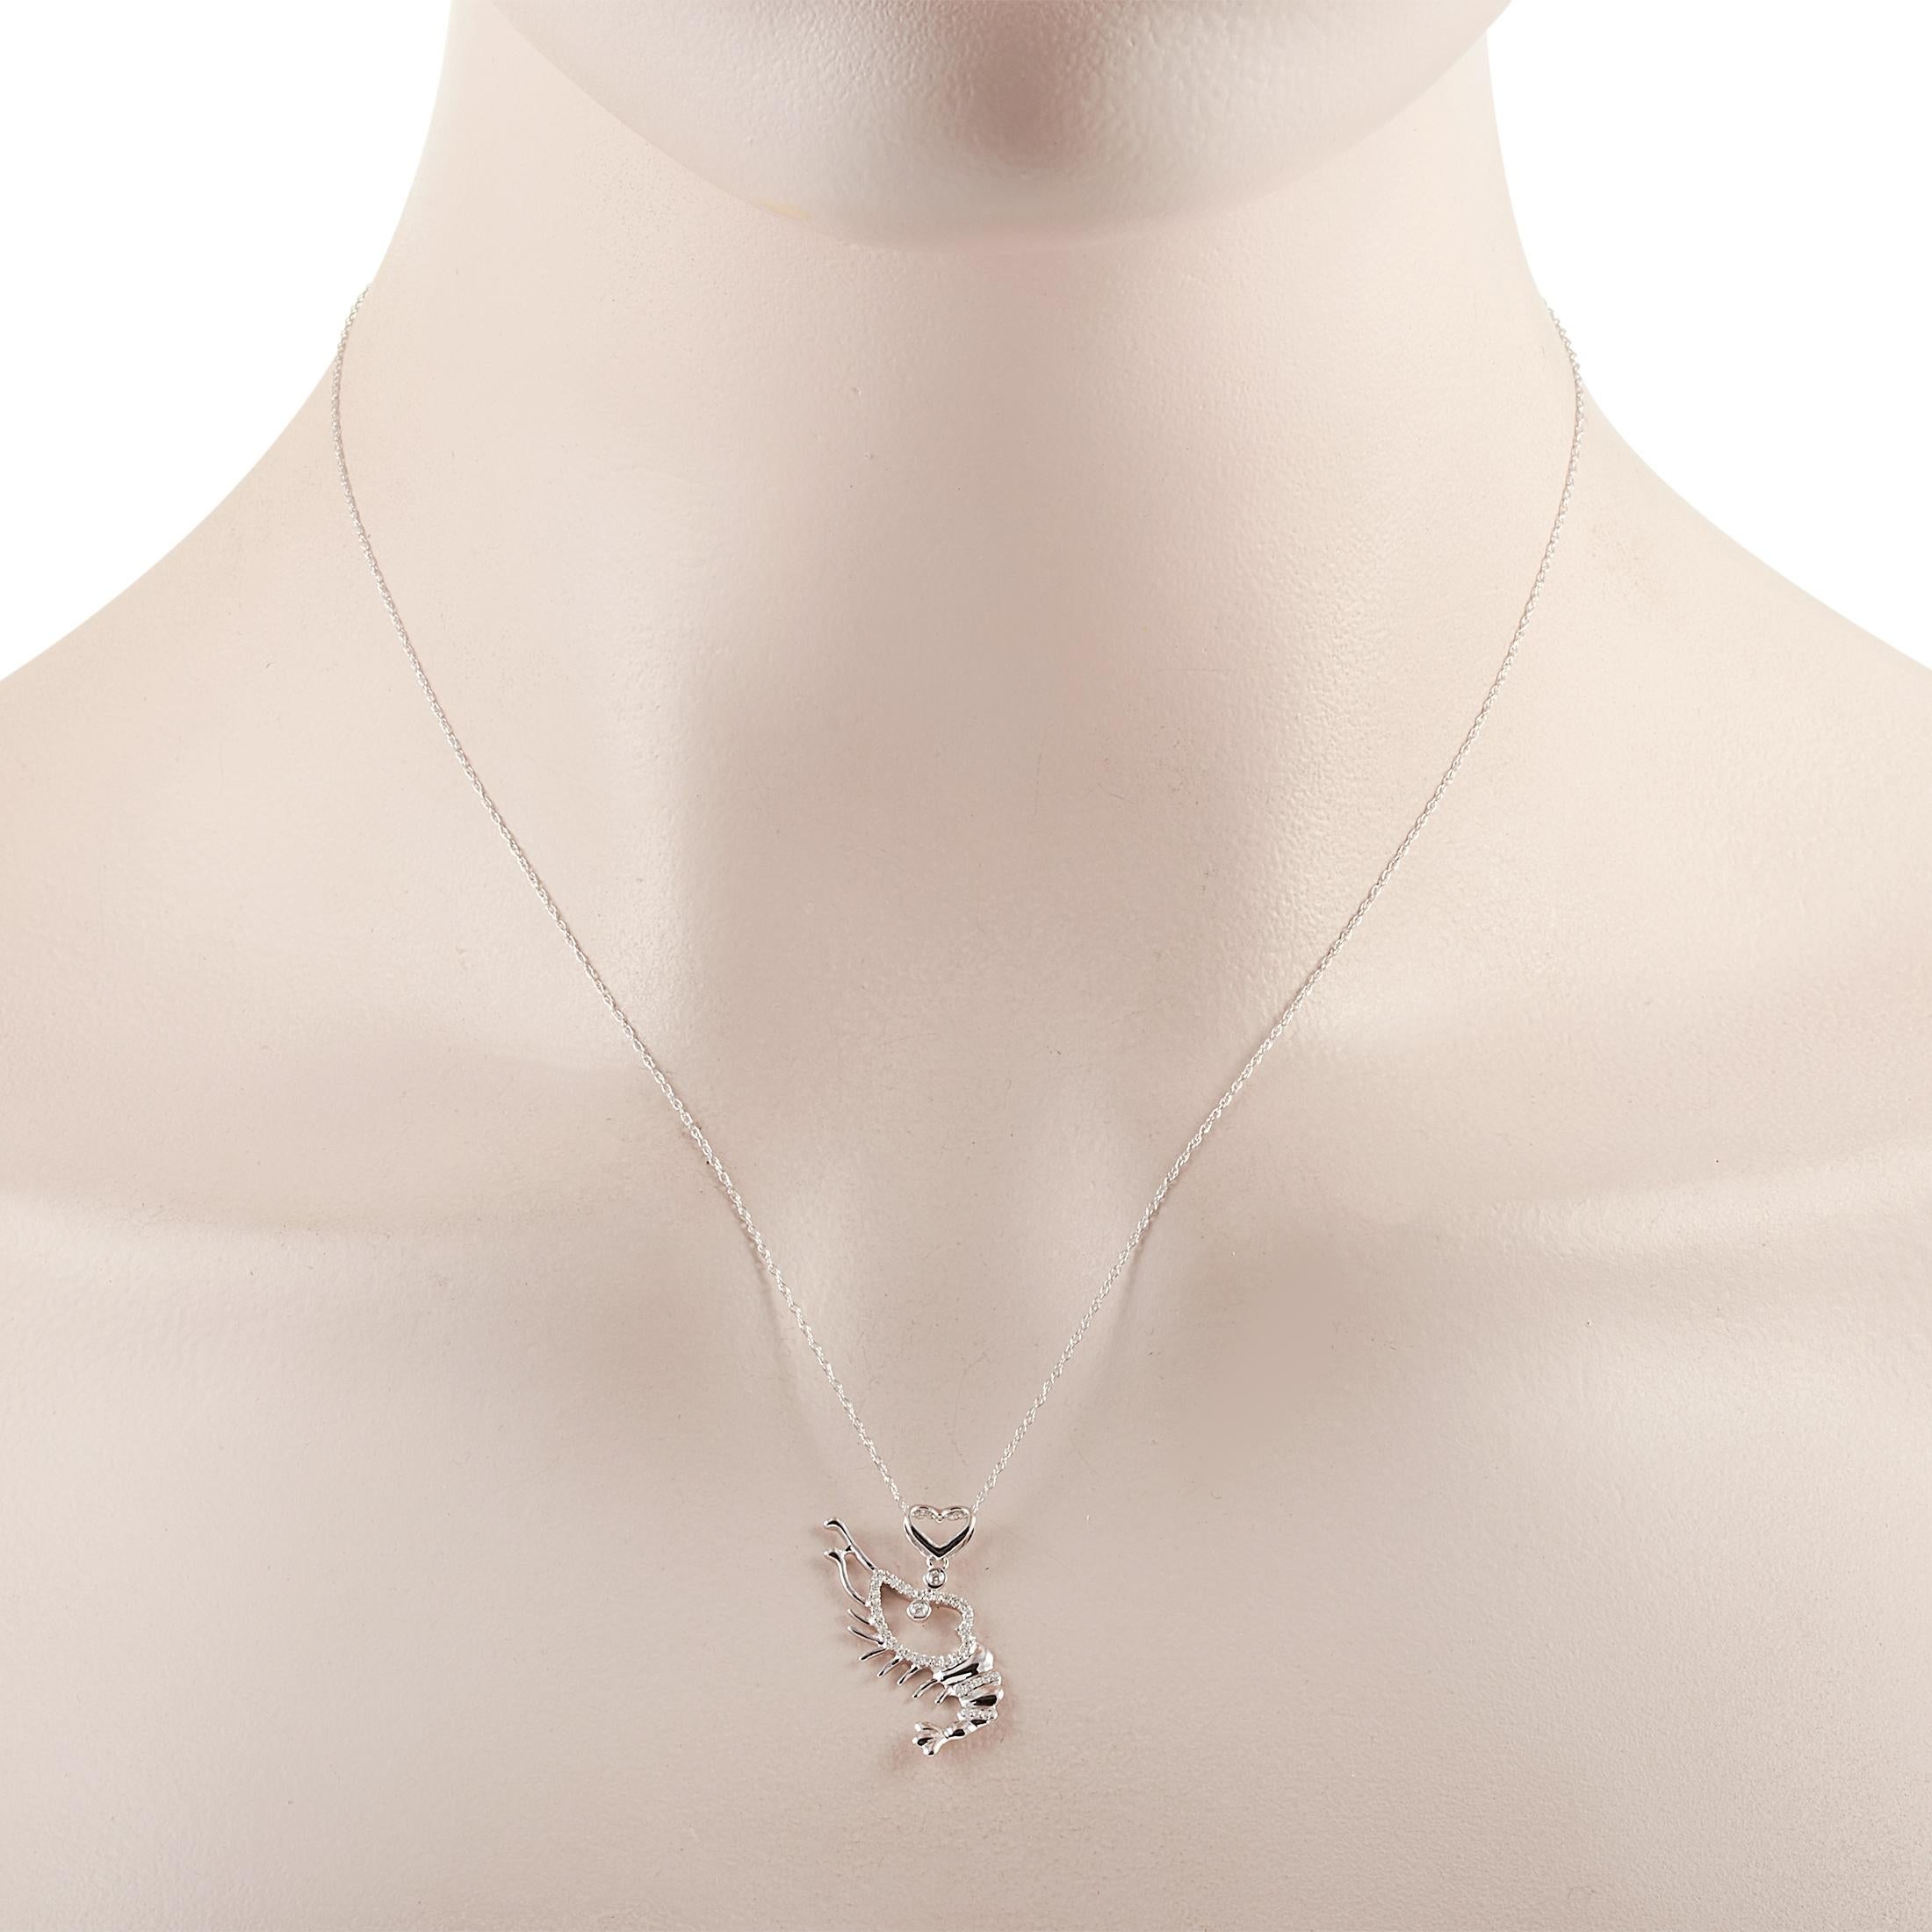 Diese LB Exclusive-Halskette ist aus 14-karätigem Weißgold gefertigt und mit Diamanten von 0,14 Karat verziert. Die Halskette wiegt 1,9 Gramm und verfügt über eine 16-Zoll-Kette und einen Anhänger, der 1 Zoll lang und 0,50 Zoll breit ist.
 
 Dieses